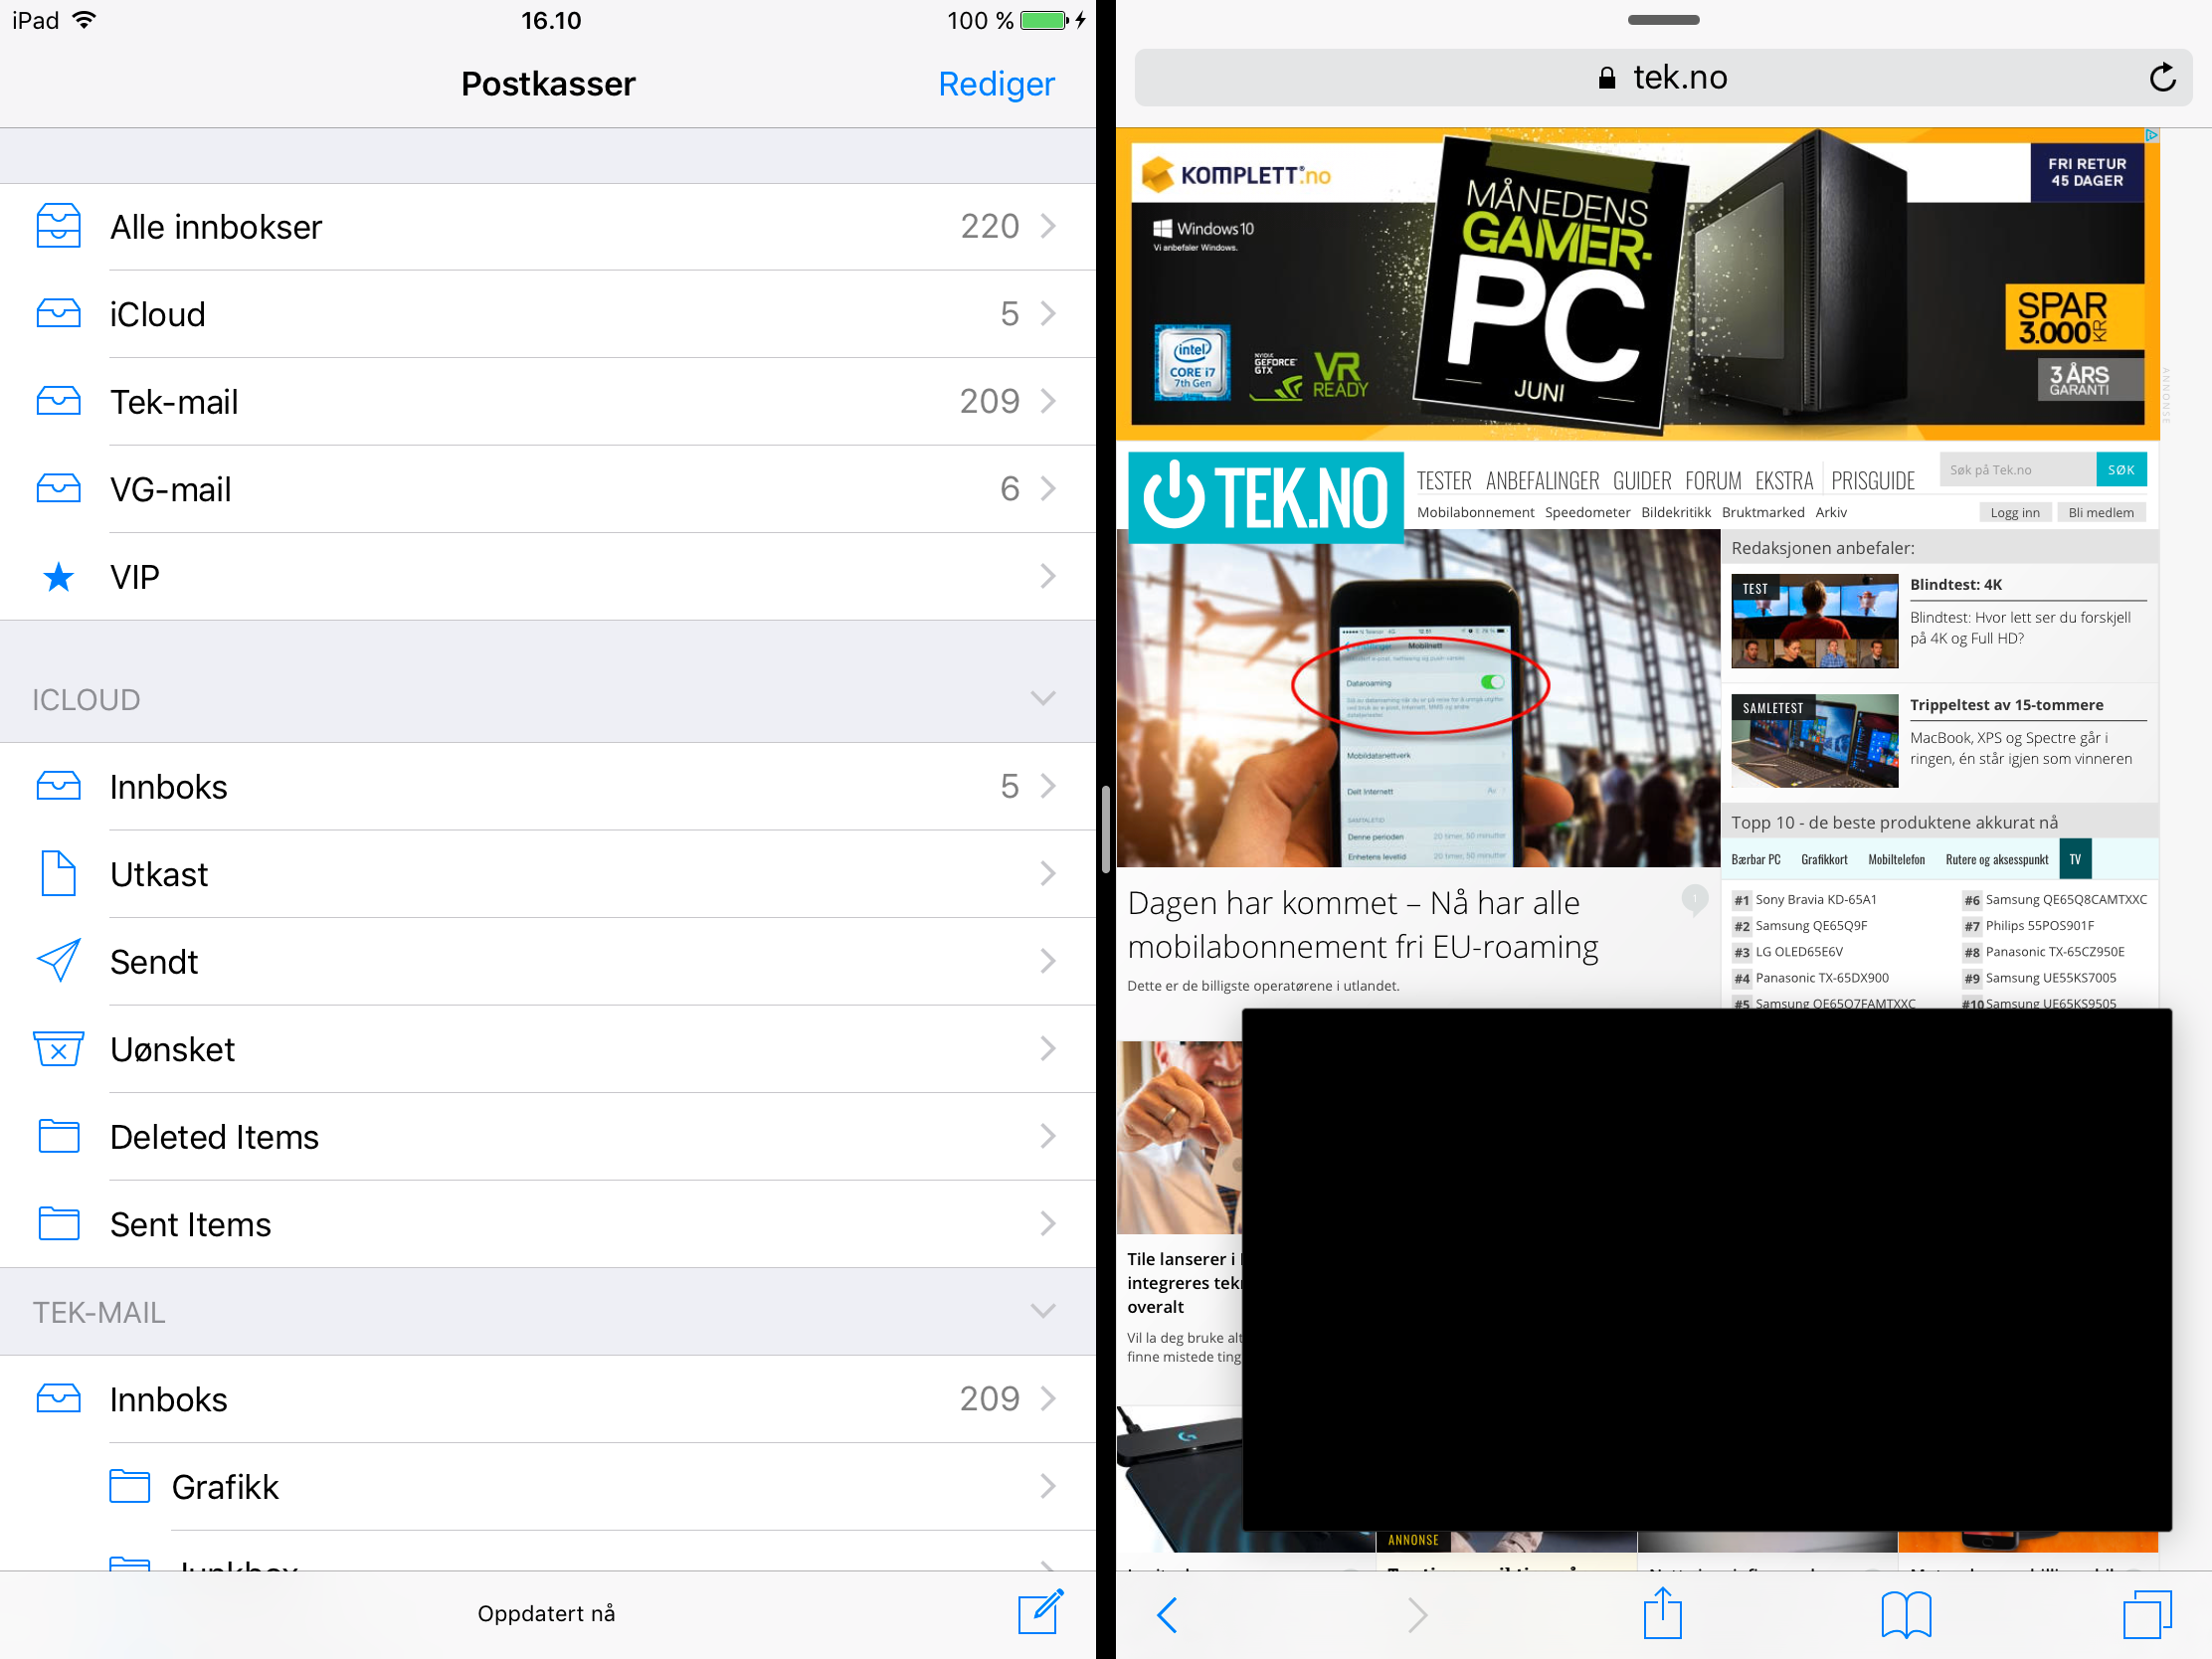 En del multitaskingelementer har kommet inn i iOS alt. Du kan ha to apper side om side og videoavspilling kan foregå i en boks som flyter rundt på skjermen. Til høsten vil man også kunne trekke innhold mellom apper som ligger på denne måten, og det blir enklere å veksle mellom dem.